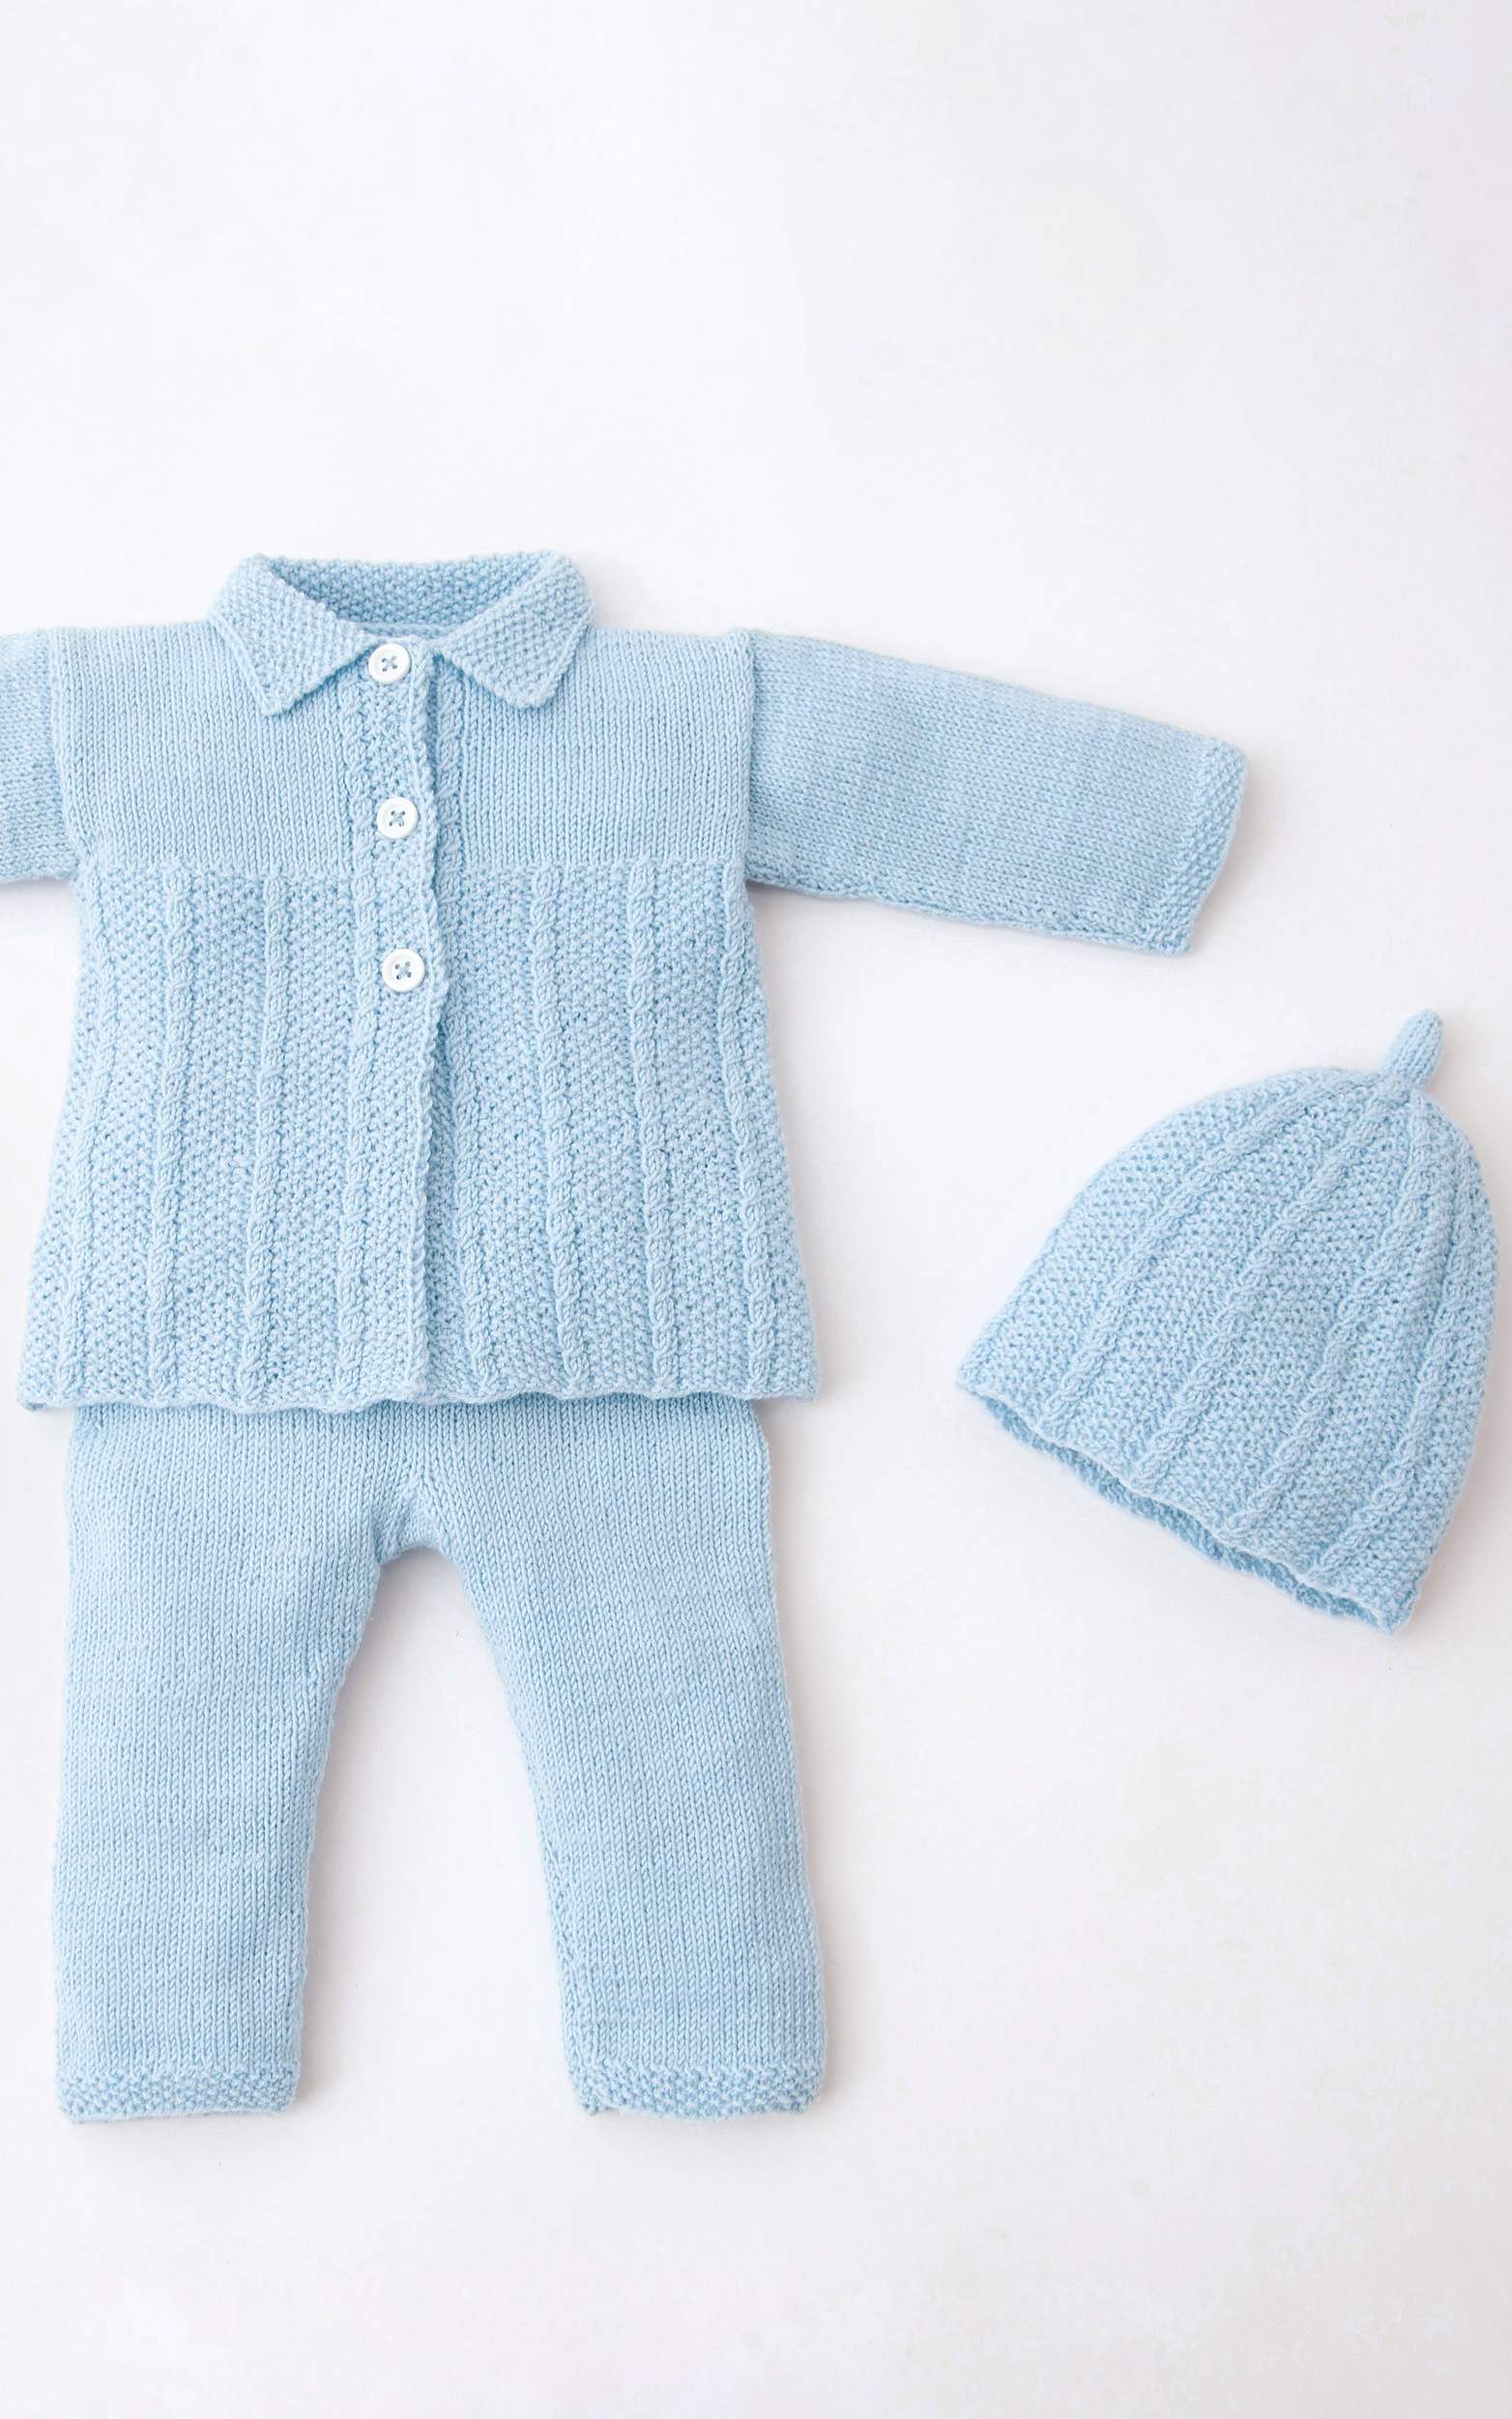 Baby Mantel, Hose und Mütze - Strickset von LANA GROSSA jetzt online kaufen bei OONIQUE